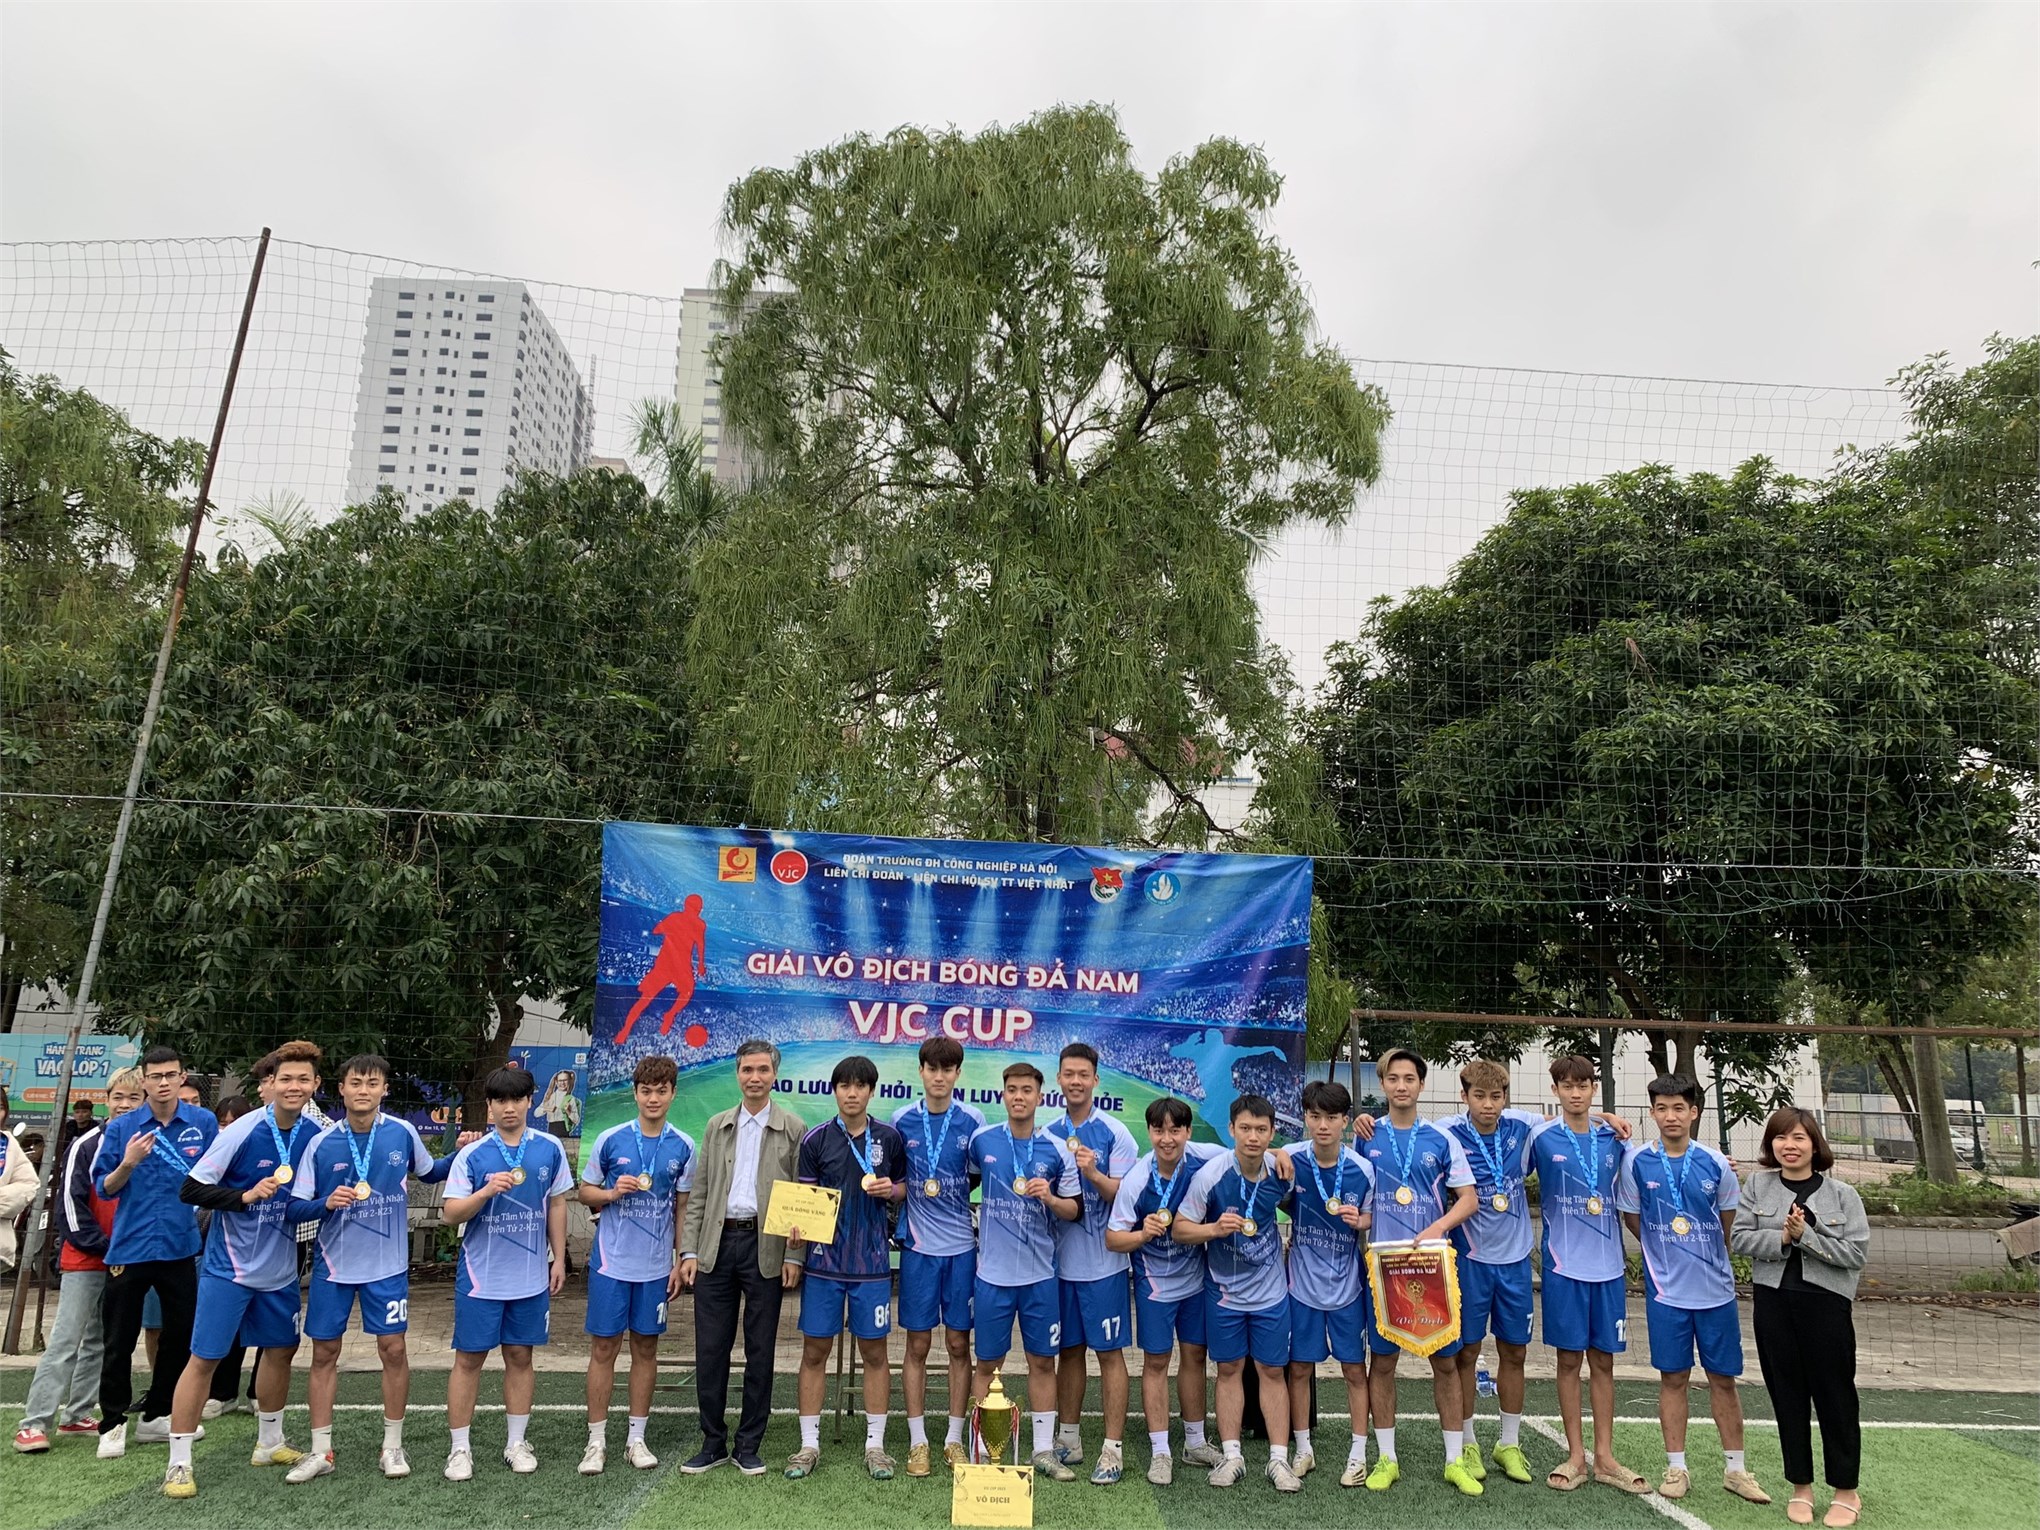 Chung kết và trao giải bóng đá nam sinh viên TT Việt Nhật